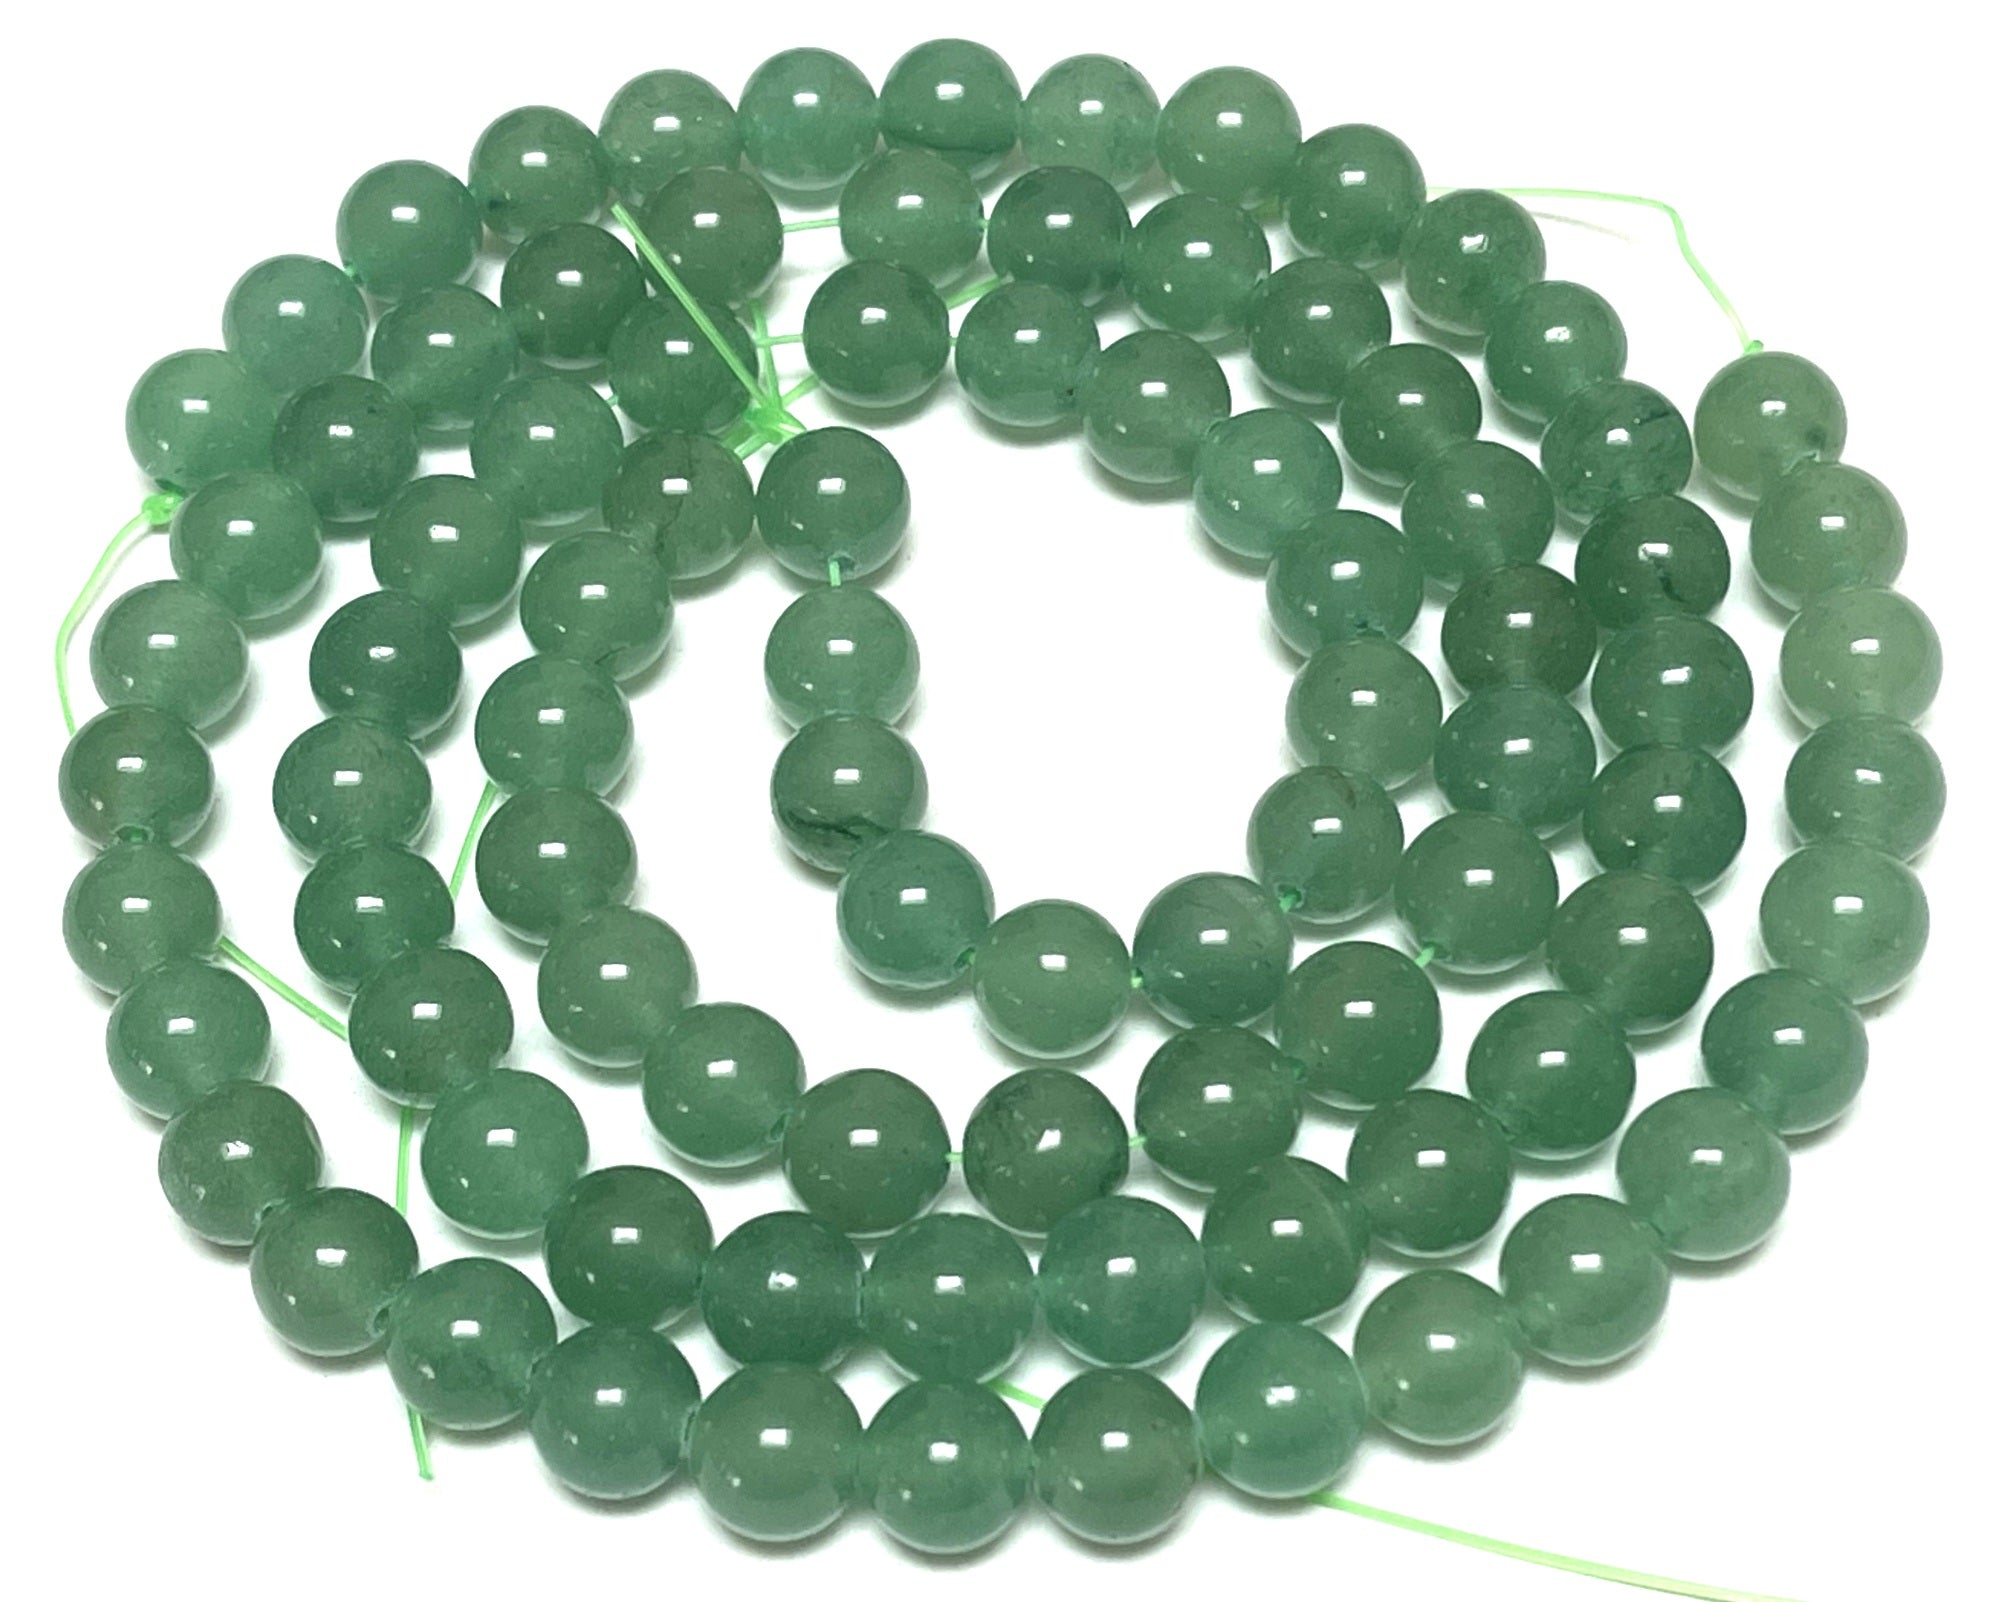 Green Aventurine 8mm round natural gemstone beads 15" strand - Oz Beads 